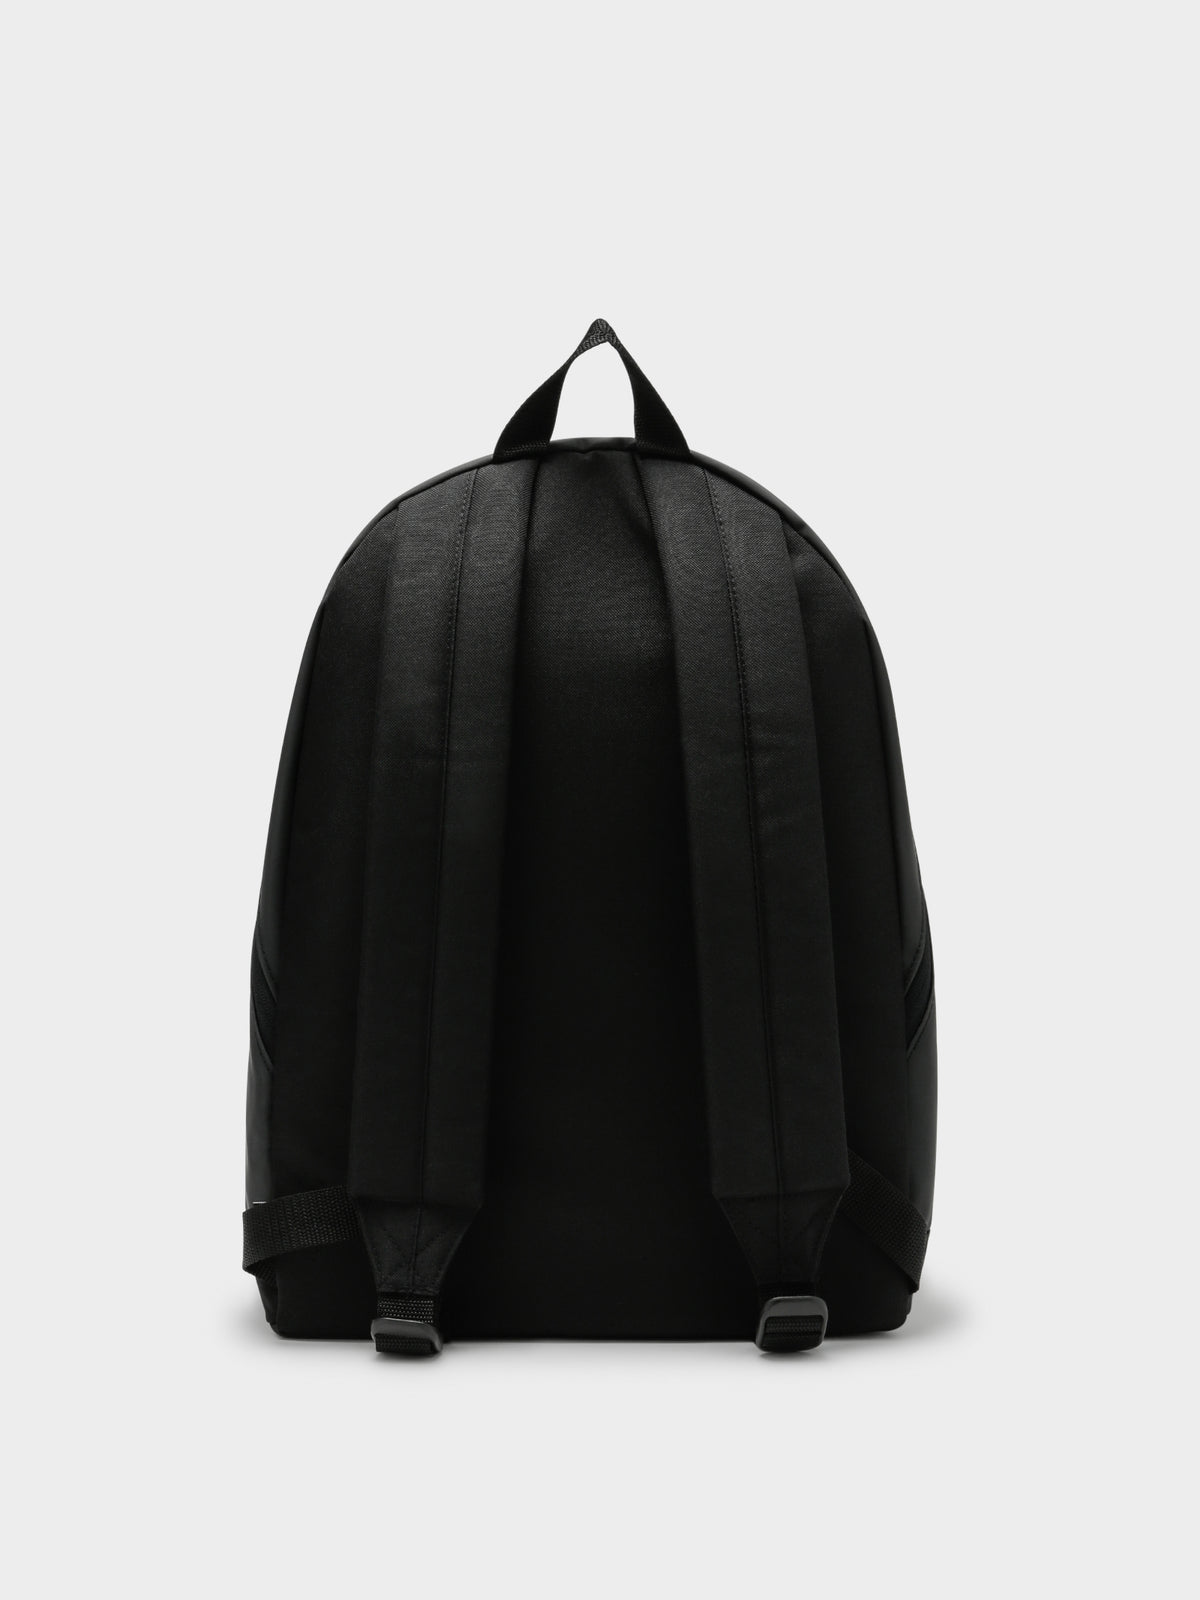 Adicolor Archive Backpack in Black